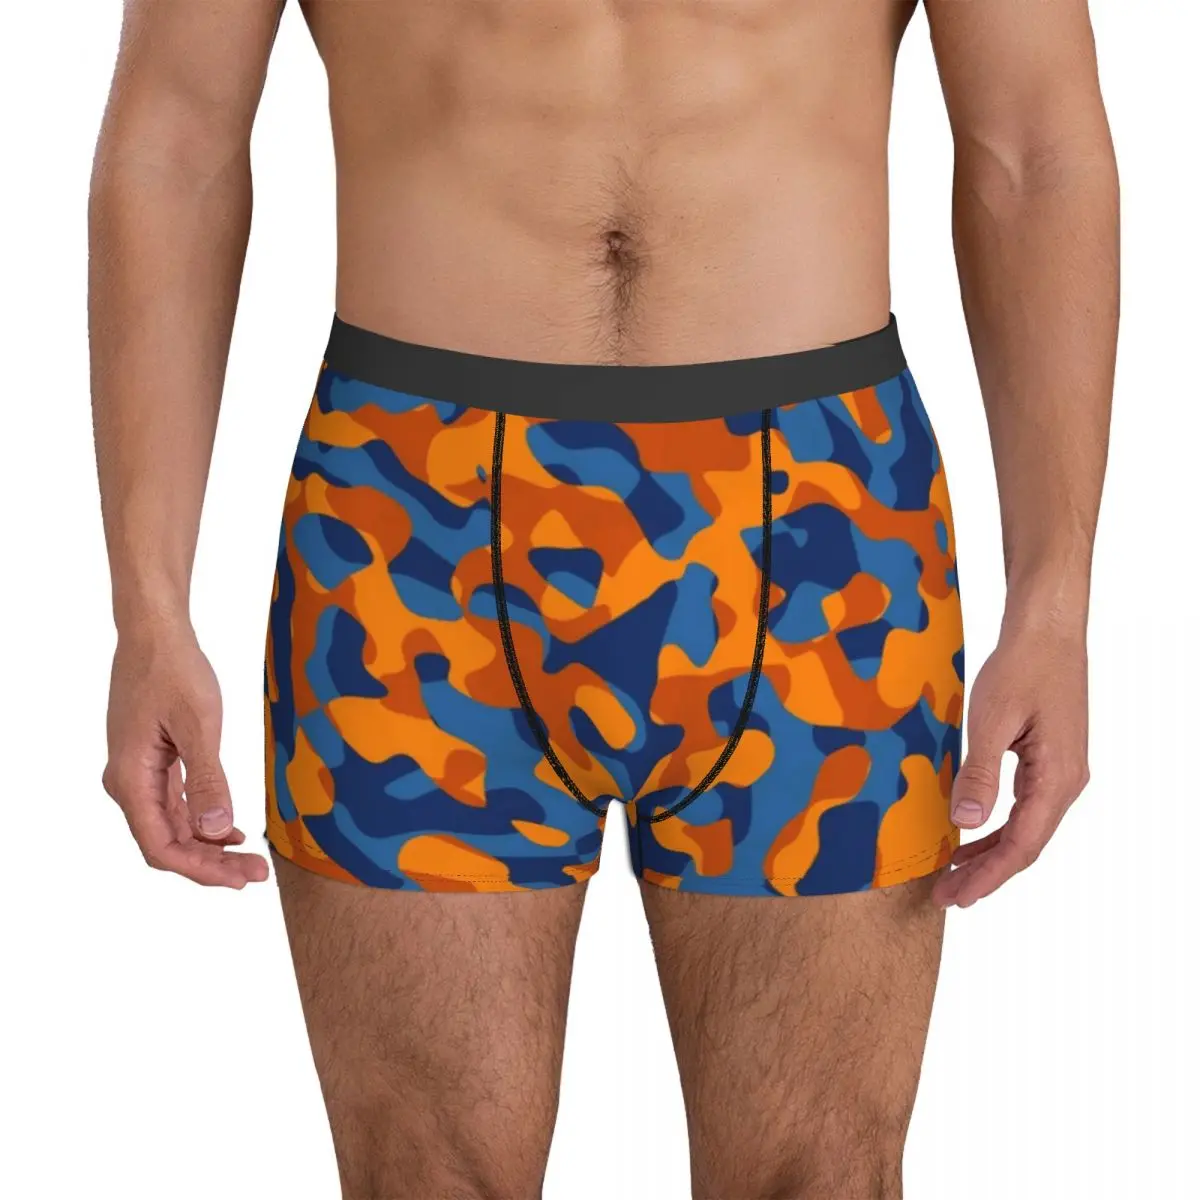 

Сине-оранжевое камуфляжное нижнее белье, камуфляжные тренировочные шорты-боксеры с объемным мешочком, дизайнерские трусы, Классические мужские трусы